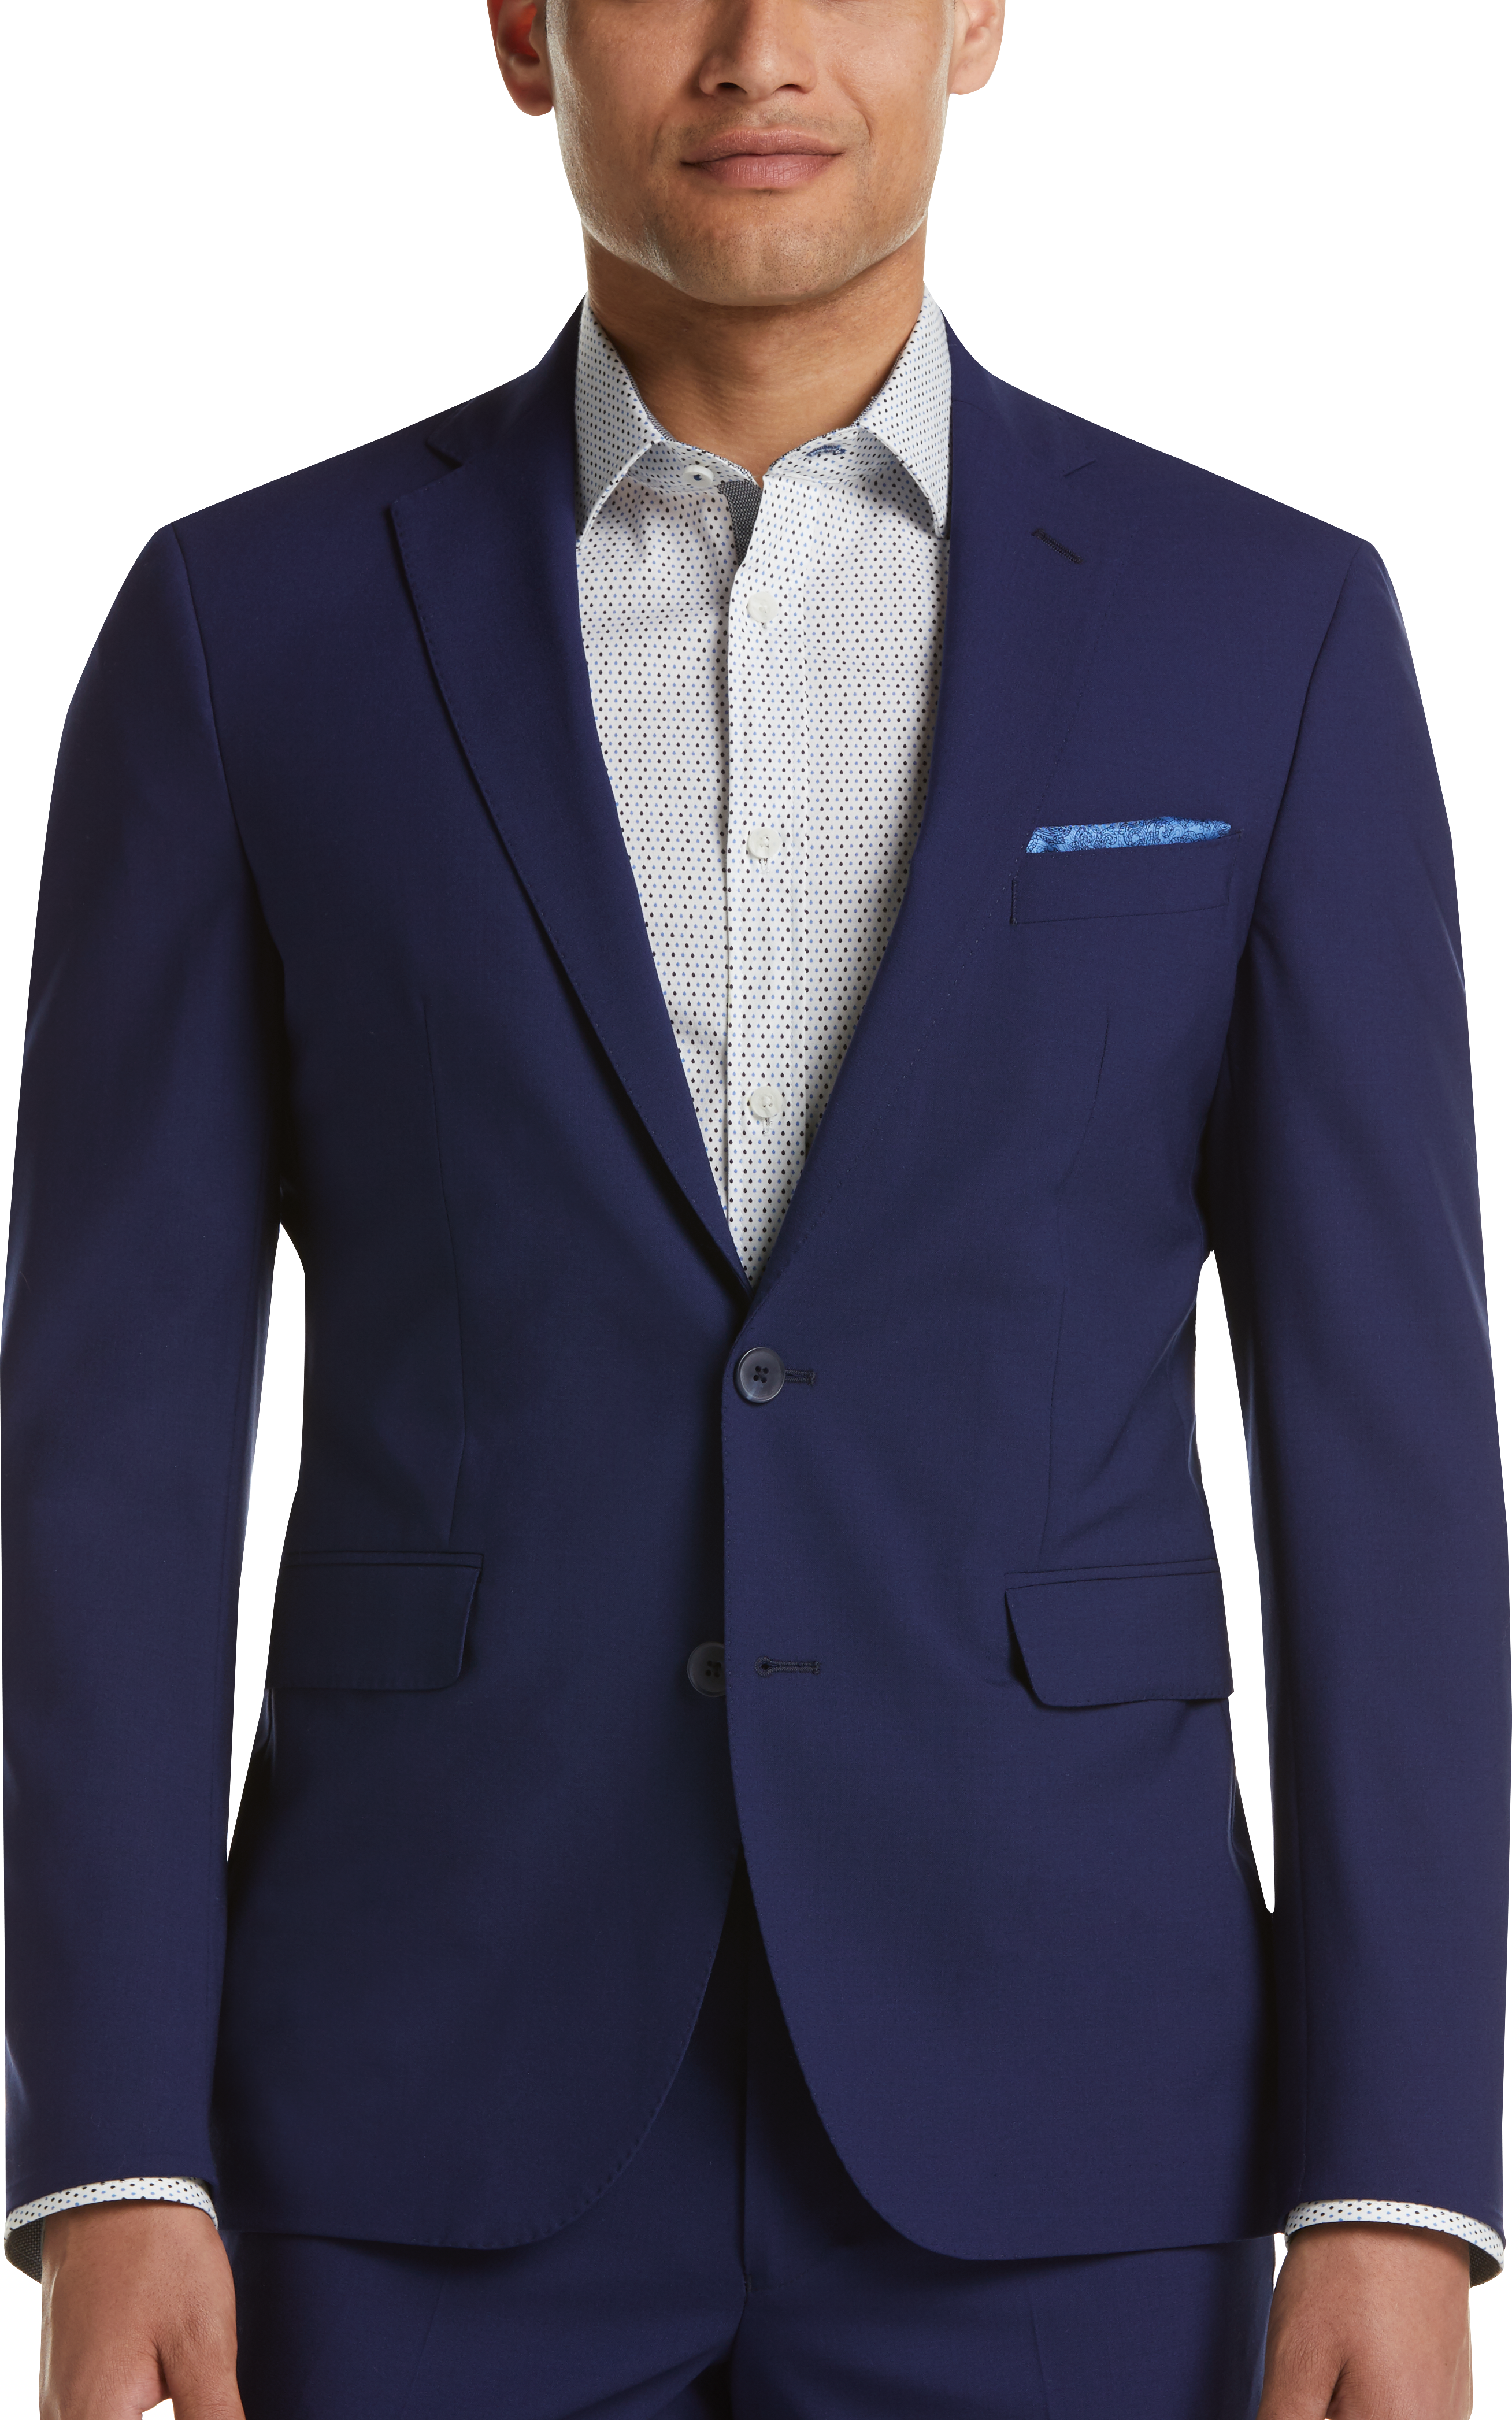 Cole Haan Grand.ØS Postman Blue Coolmax Lined Slim Fit Suit - Men's ...